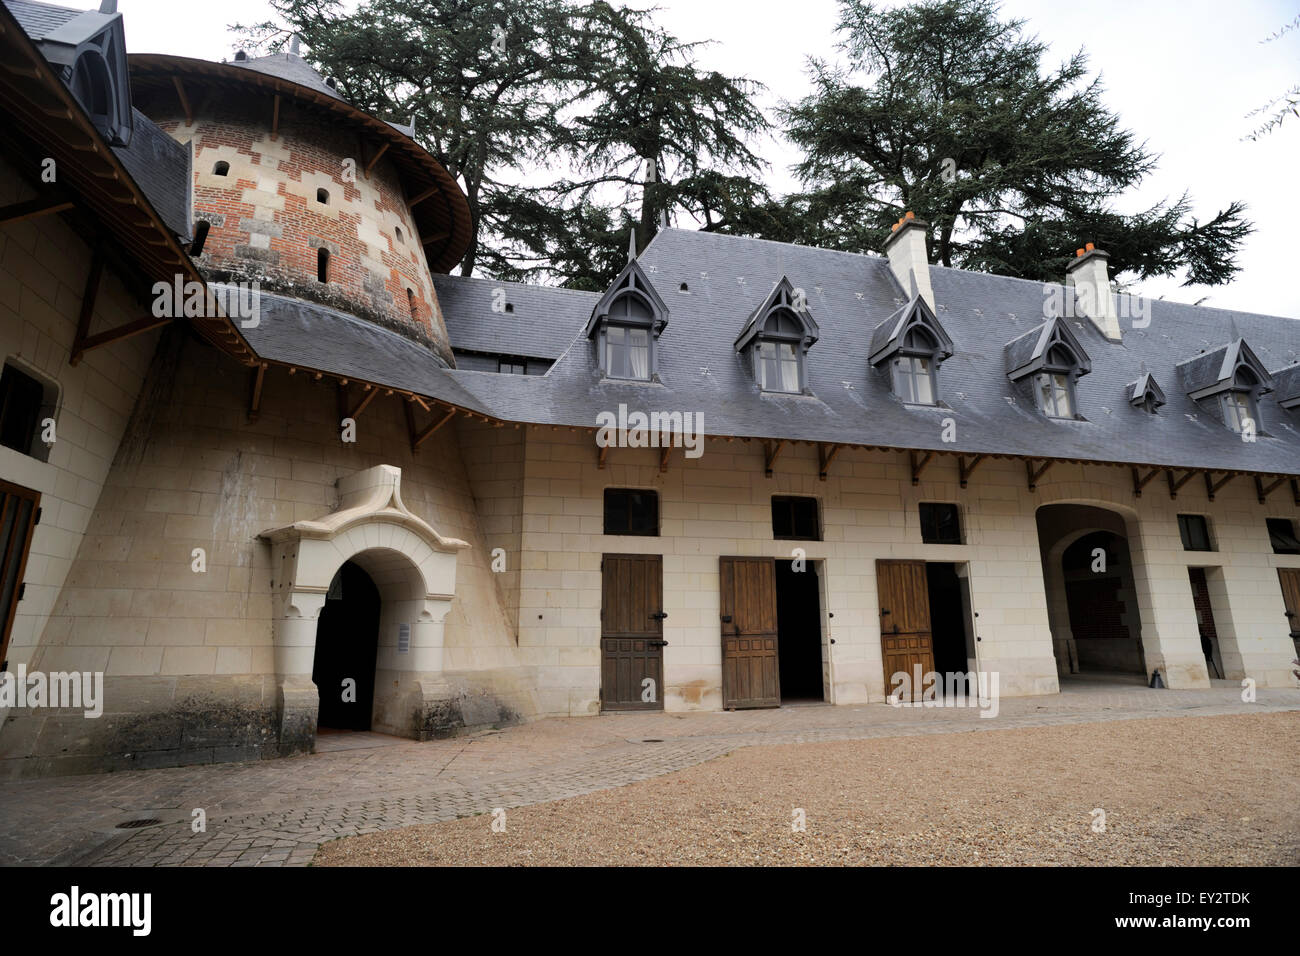 France, Vallée de la Loire, château de Chaumont, écuries anciennes Banque D'Images